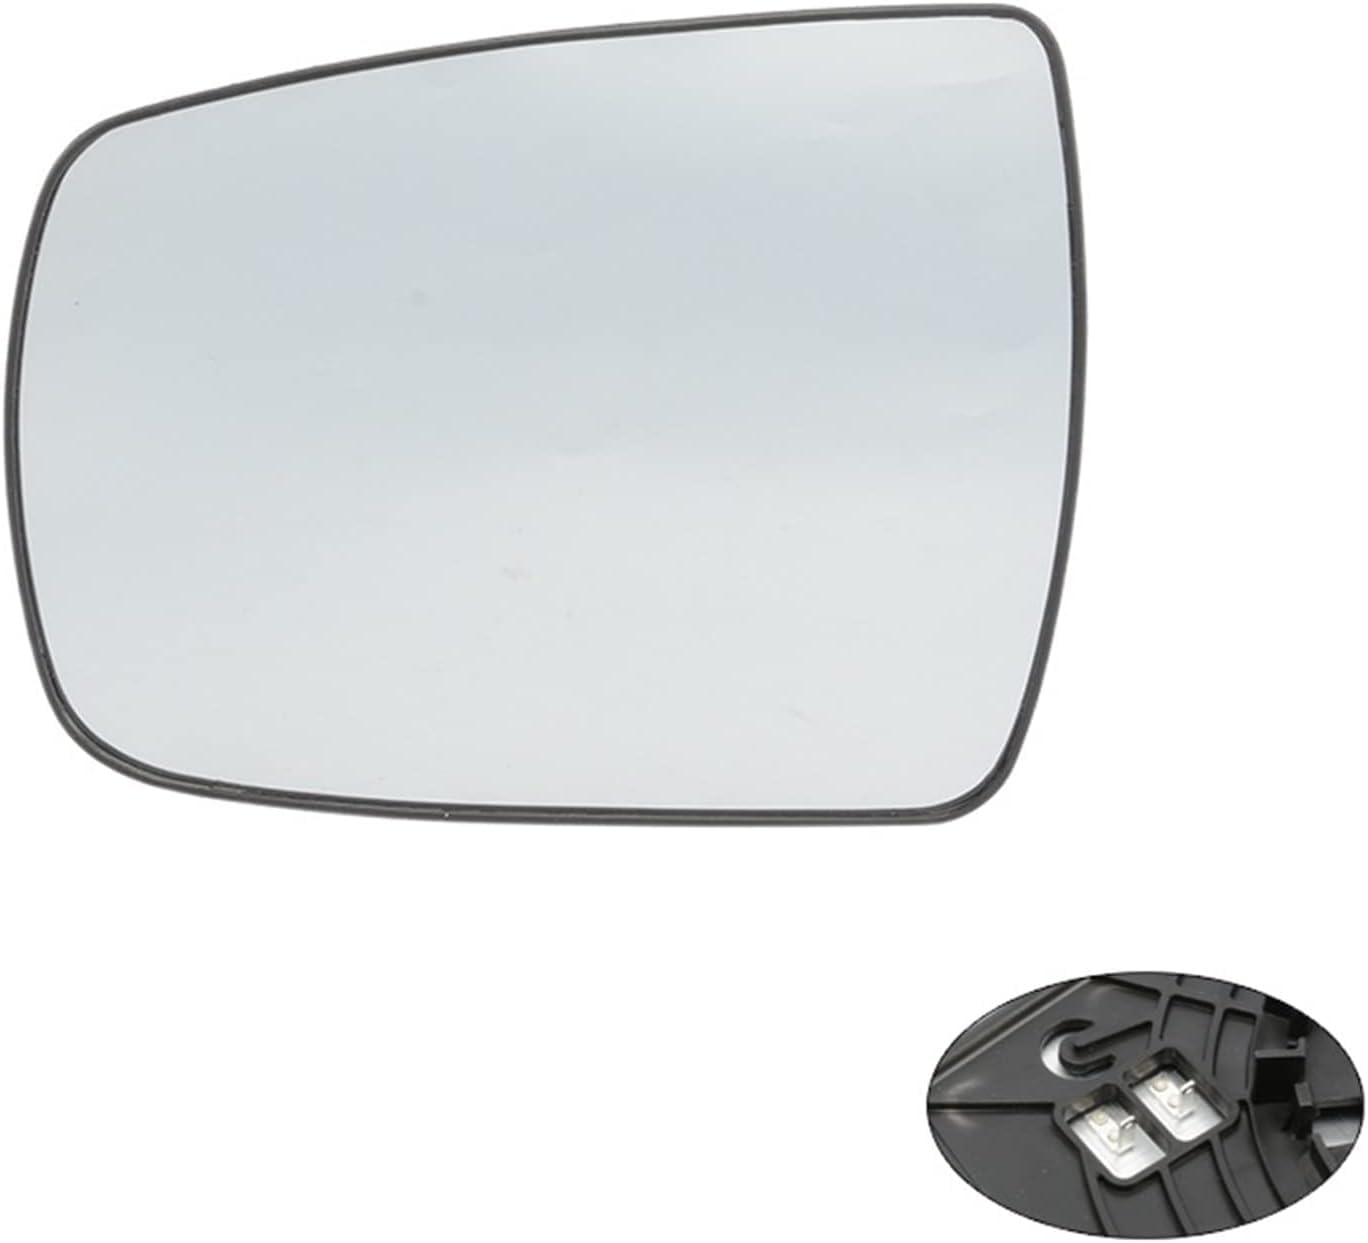 Spiegelglas Ersatz Für Kia Sorento Xm 2009-2014 Spiegelglas AußEnspiegel Spiegelglas Links Fahrerseite Beifahrerseite AutozubehöR.,A-Left von VINAUD